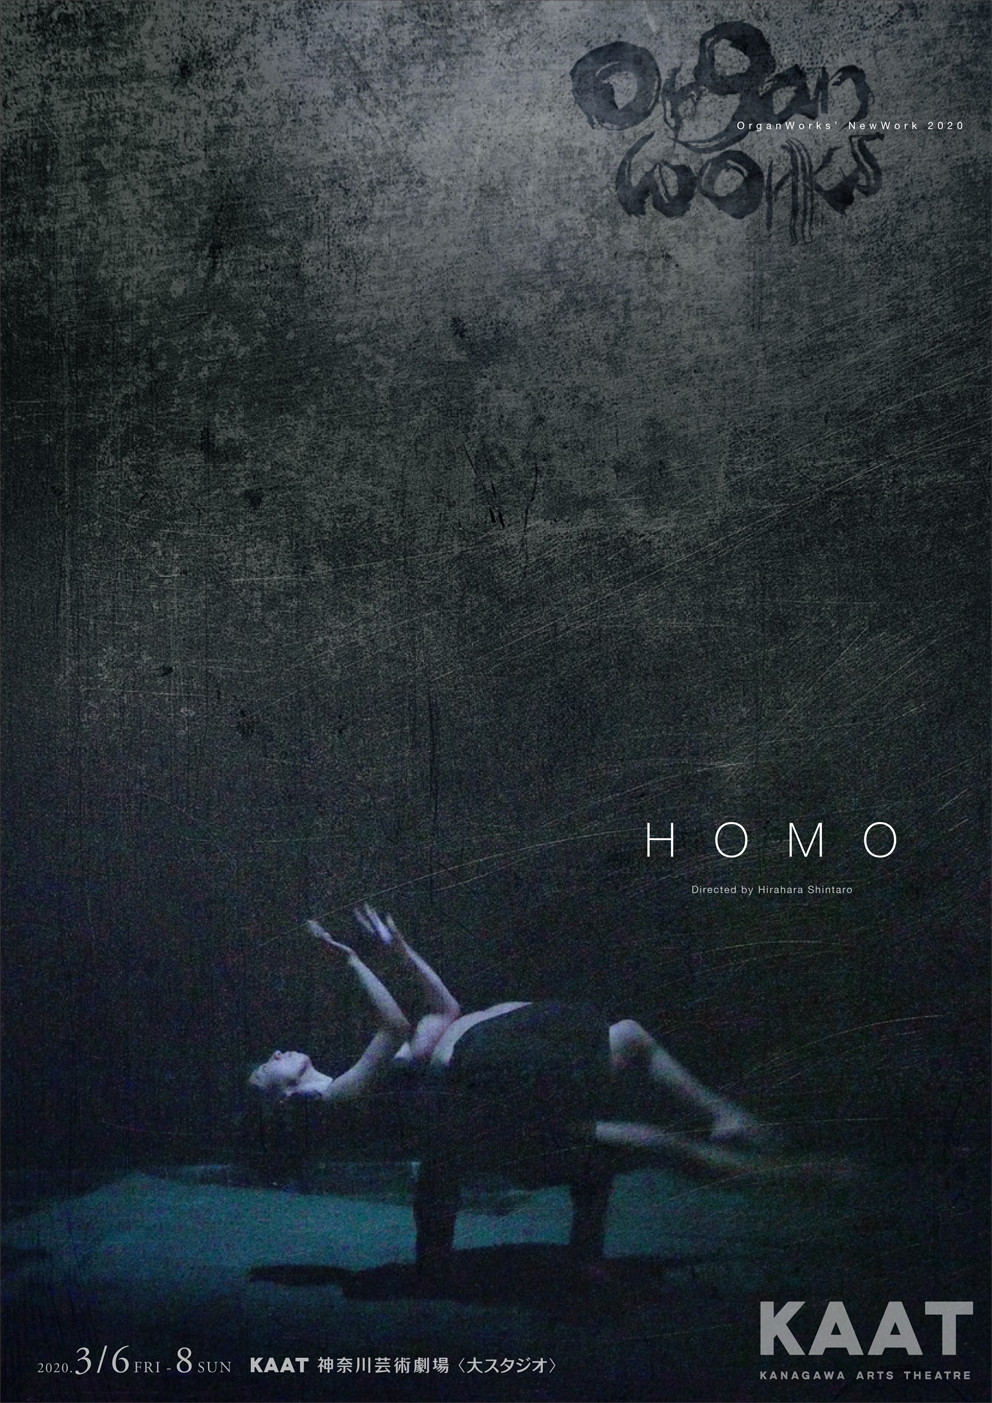 薬師寺綾・柴一平出演、OrganWorksの最新作【HOMO】人類の成り立ちを探る壮大な旅に出よう。